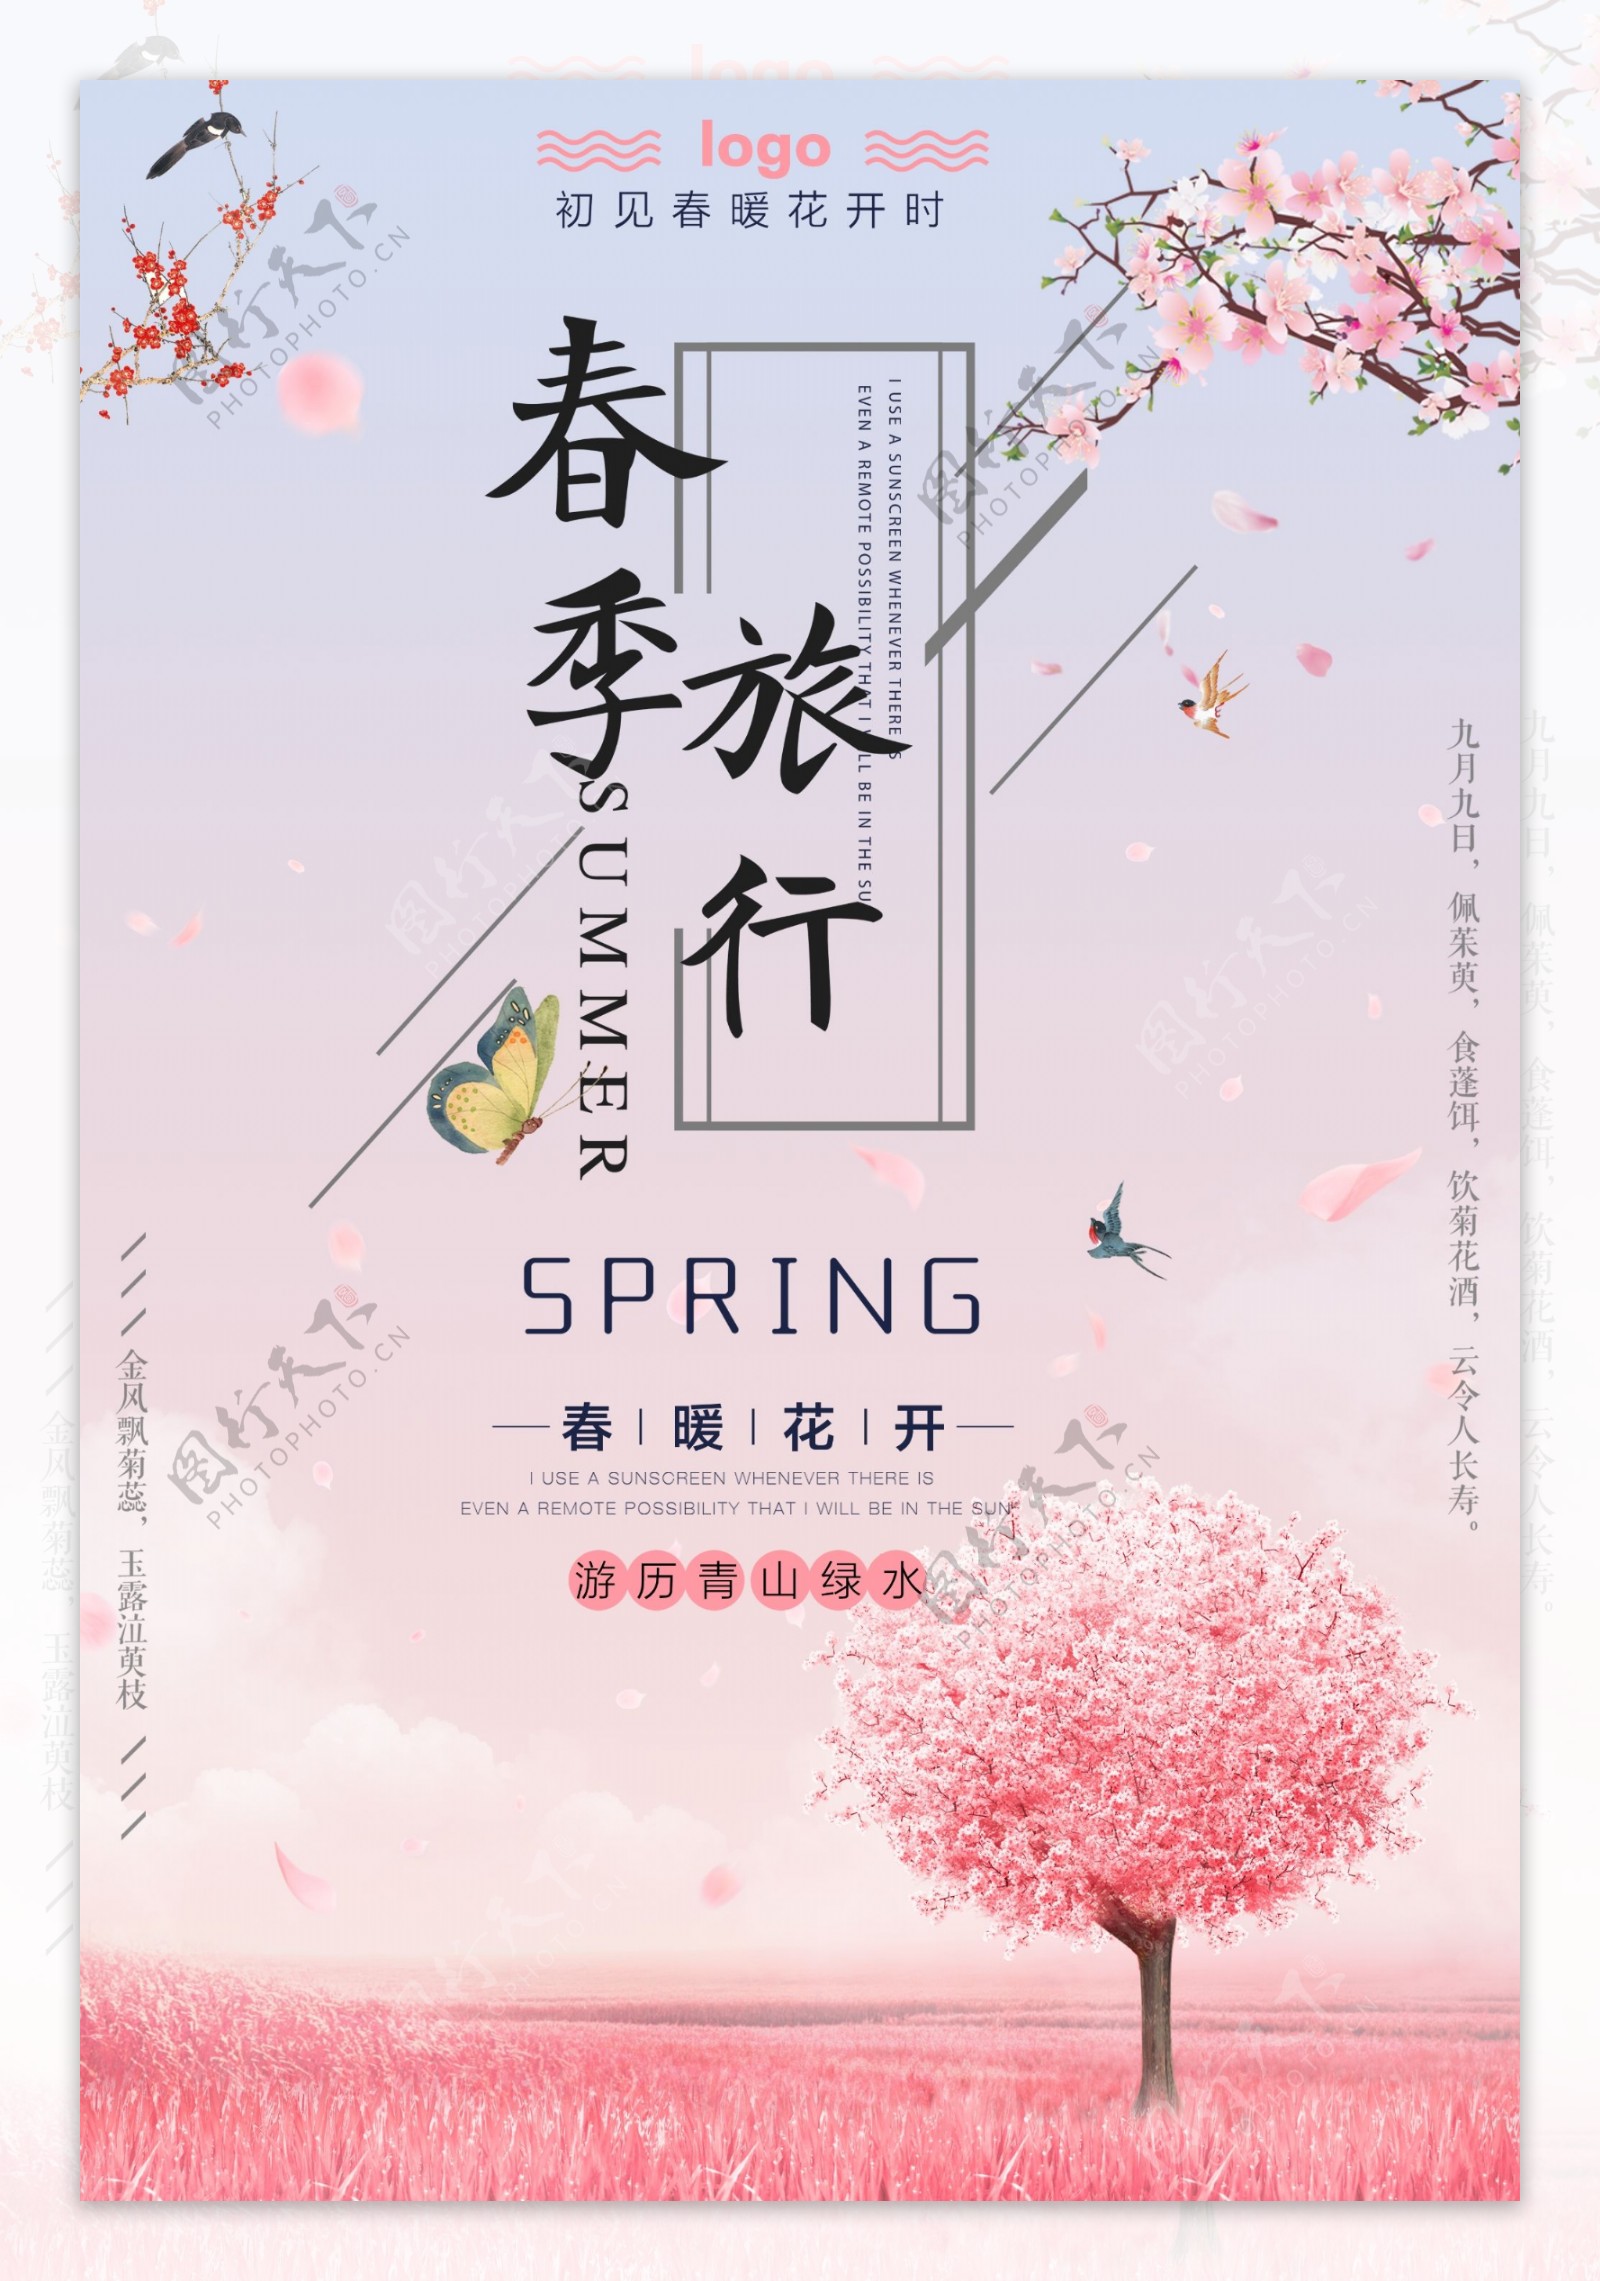 春节旅行广告